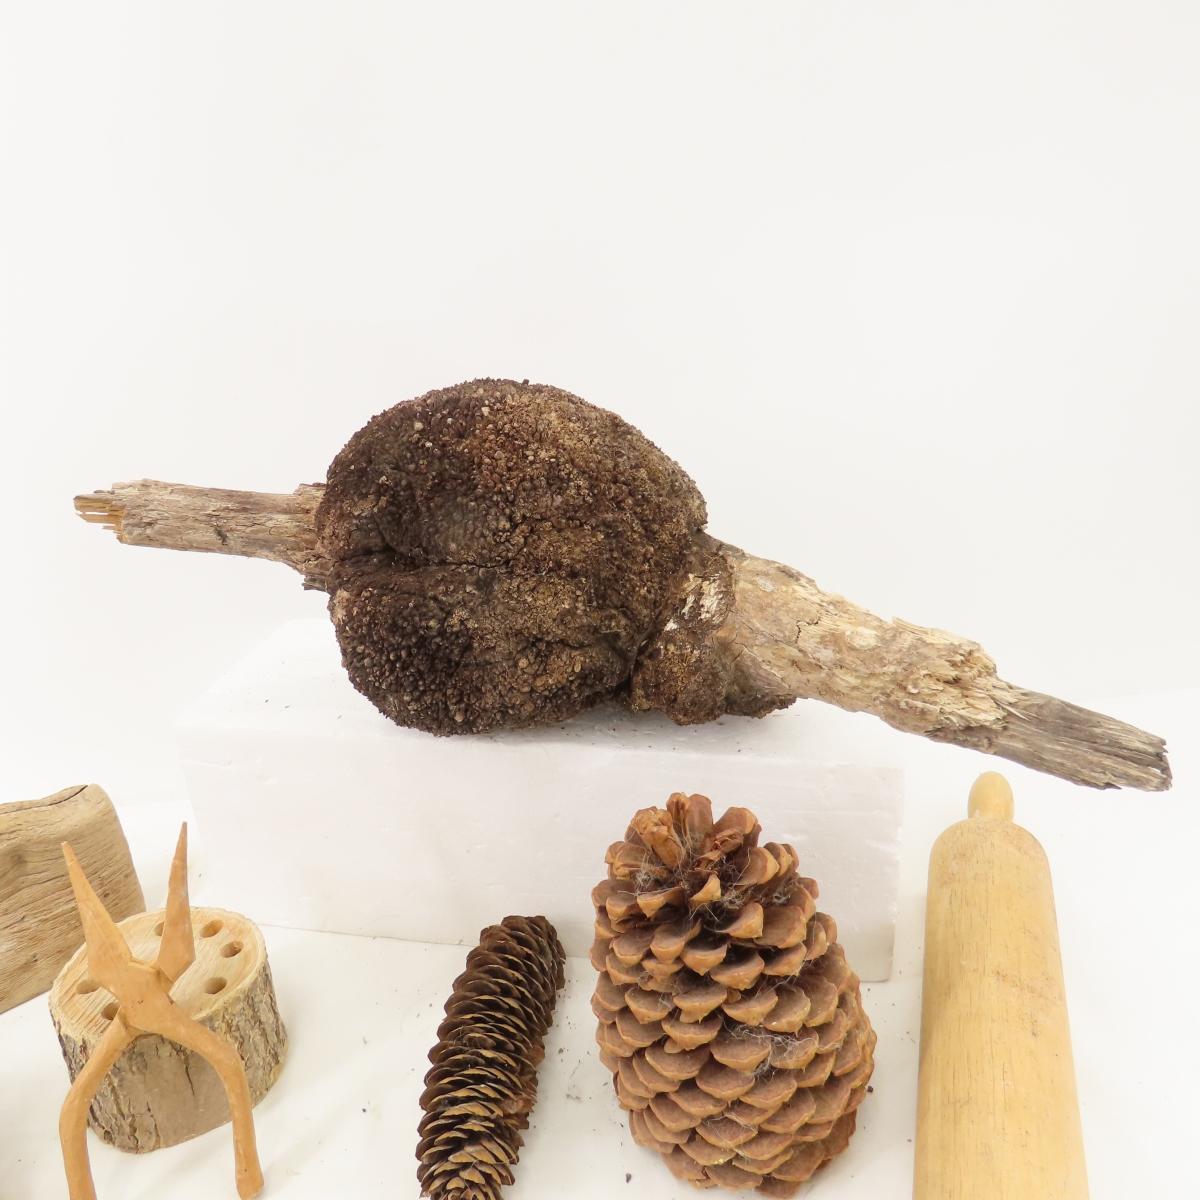 Natural wood burl, pine cones, blocks & more